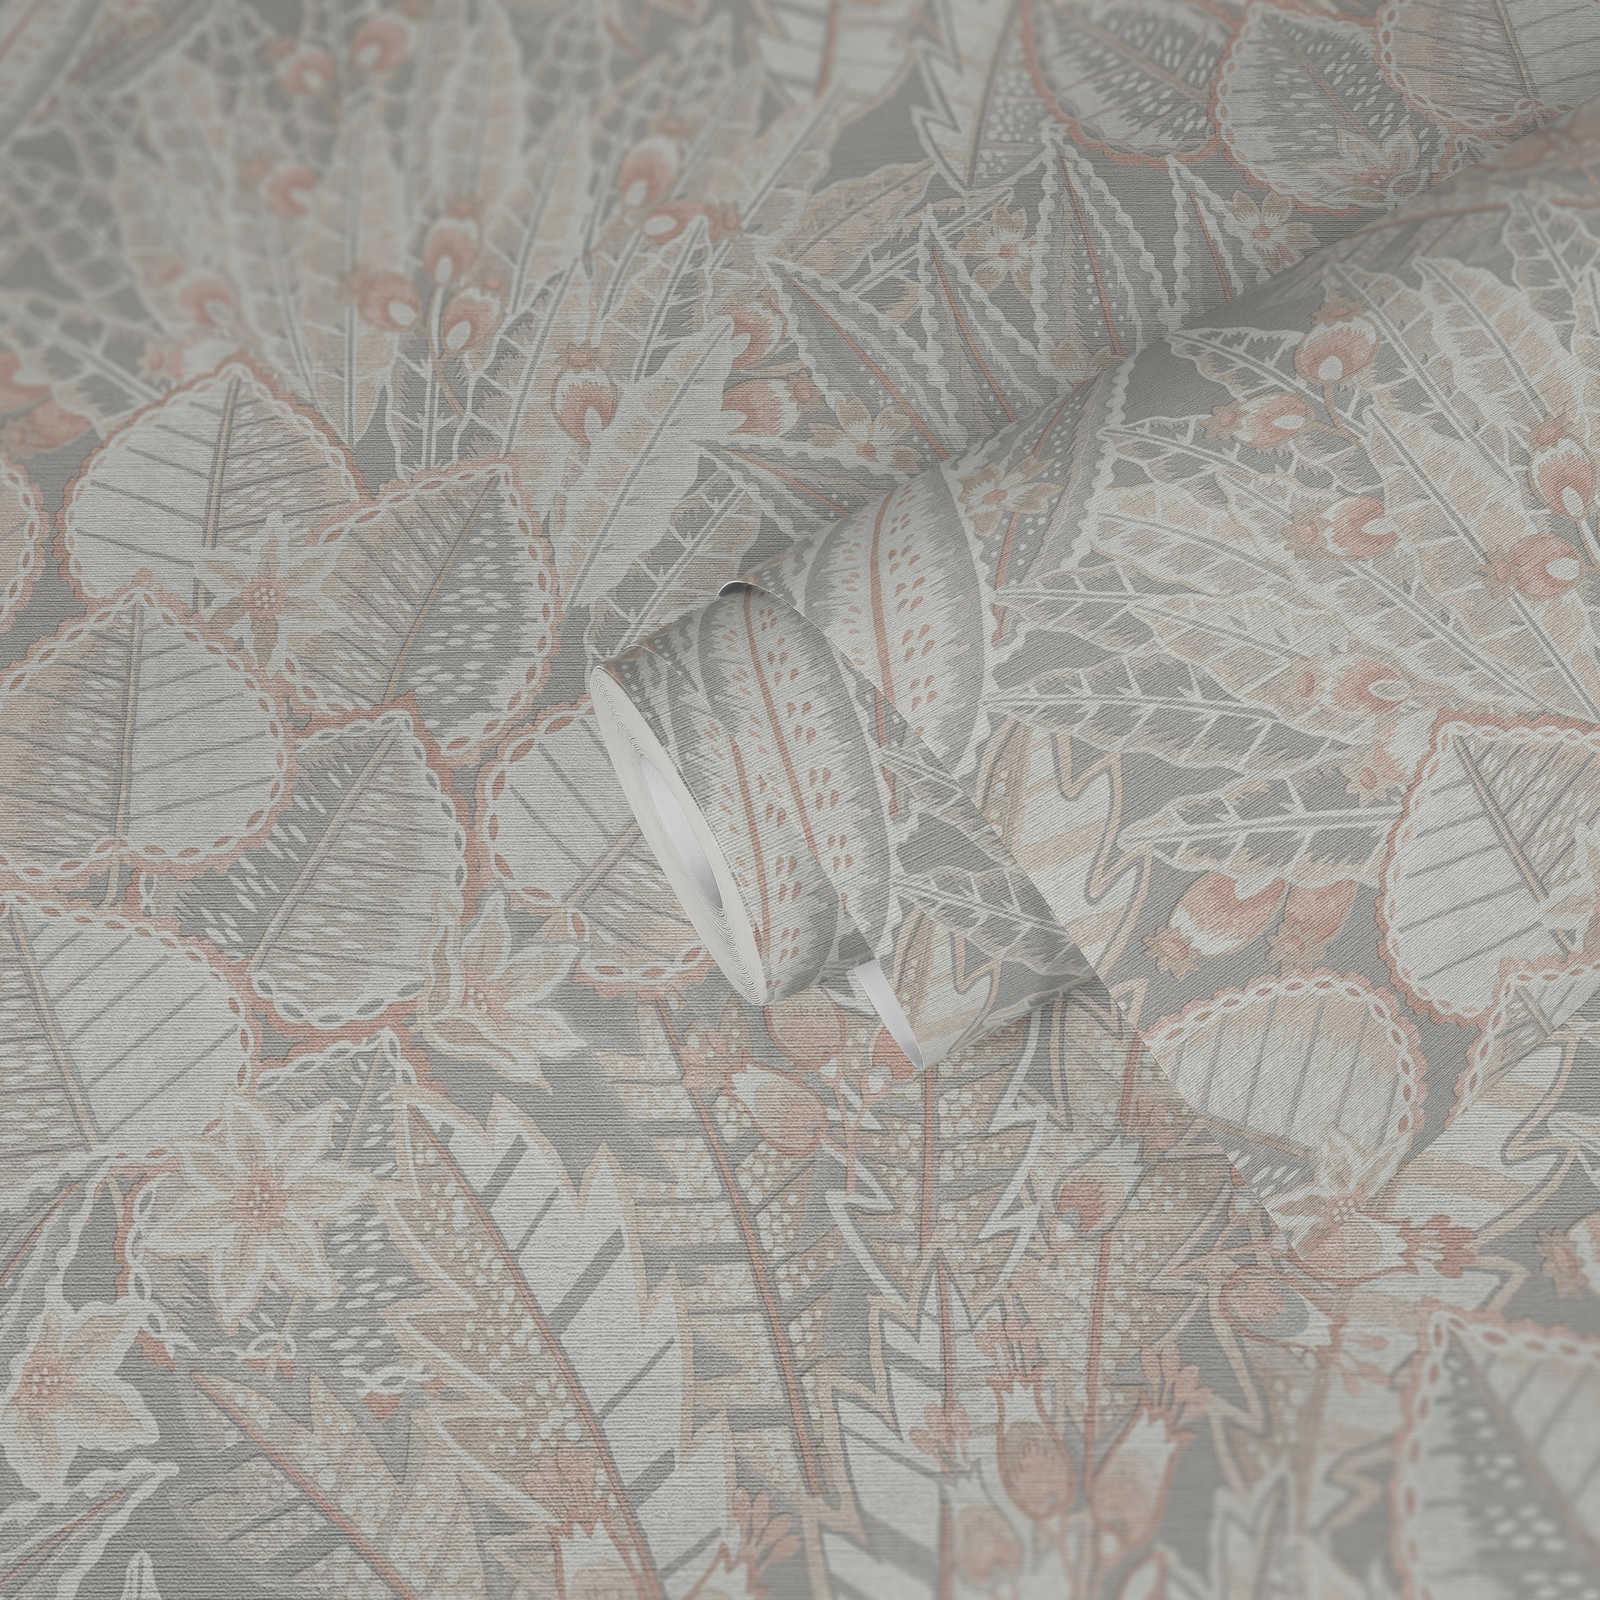             papier peint en papier intissé floral aux couleurs douces et à l'aspect mat - gris, beige, blanc
        